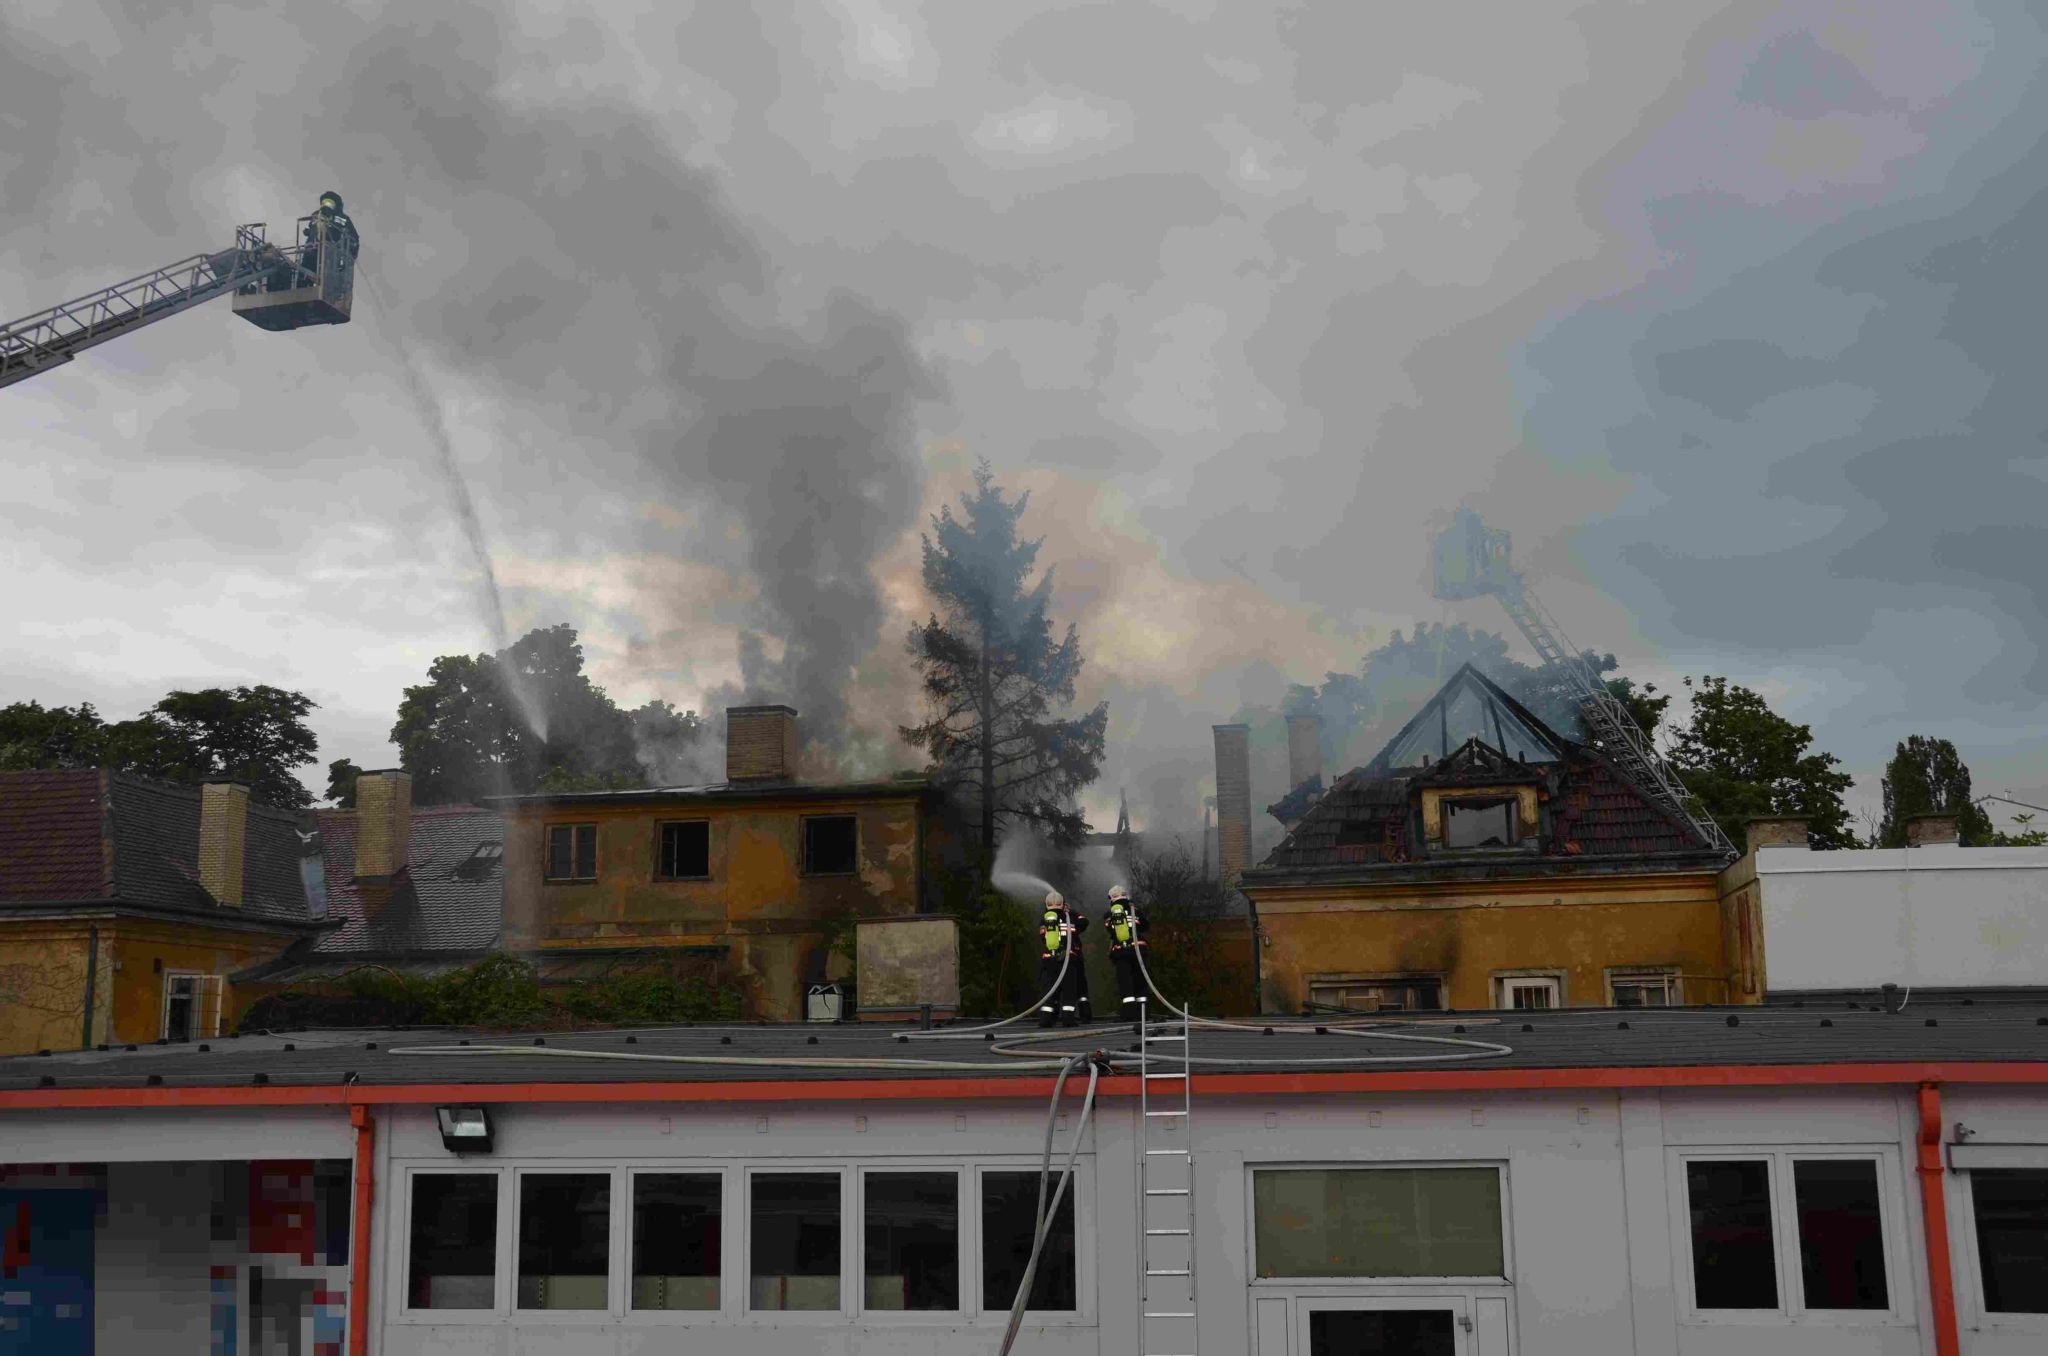 Archivmeldung Feuerwehr Dachbrand In Döbling Löst Alarmstufe 2 Aus Presse Service 3586